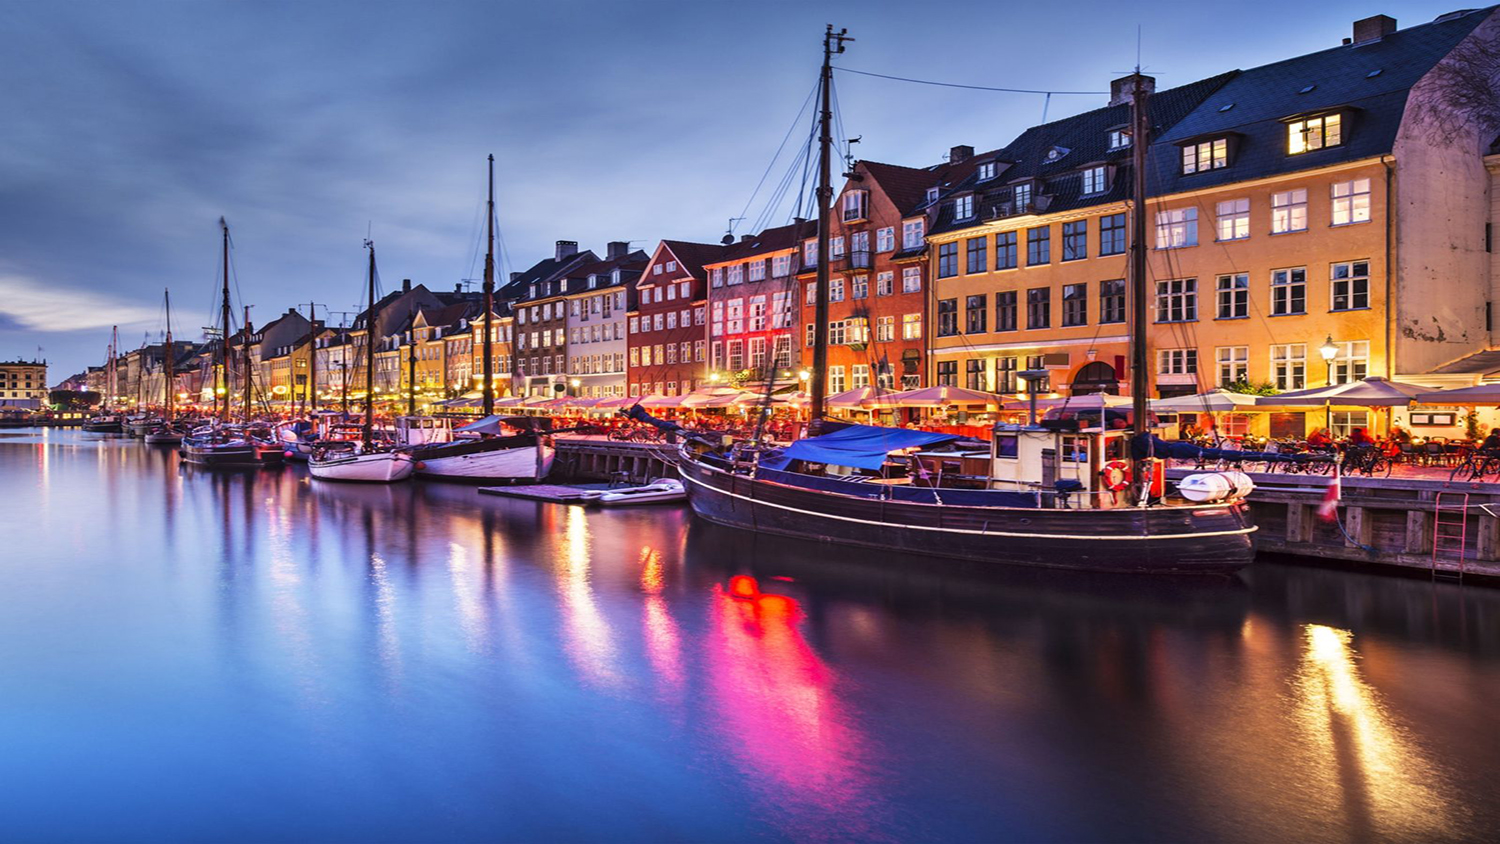 Copenhagen - Denmark